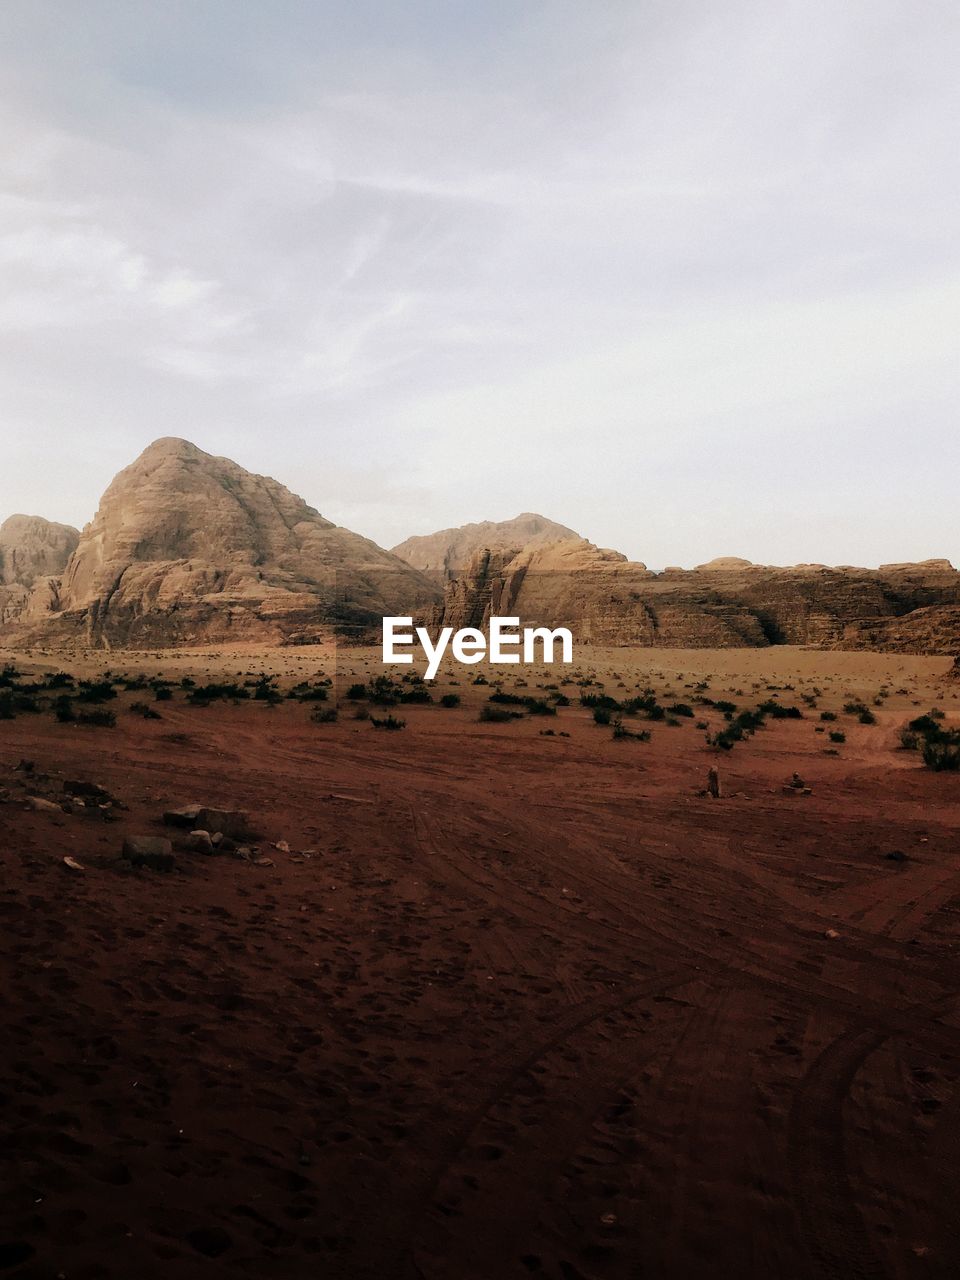 Scenic view of wadi rum desert against sky in jordan